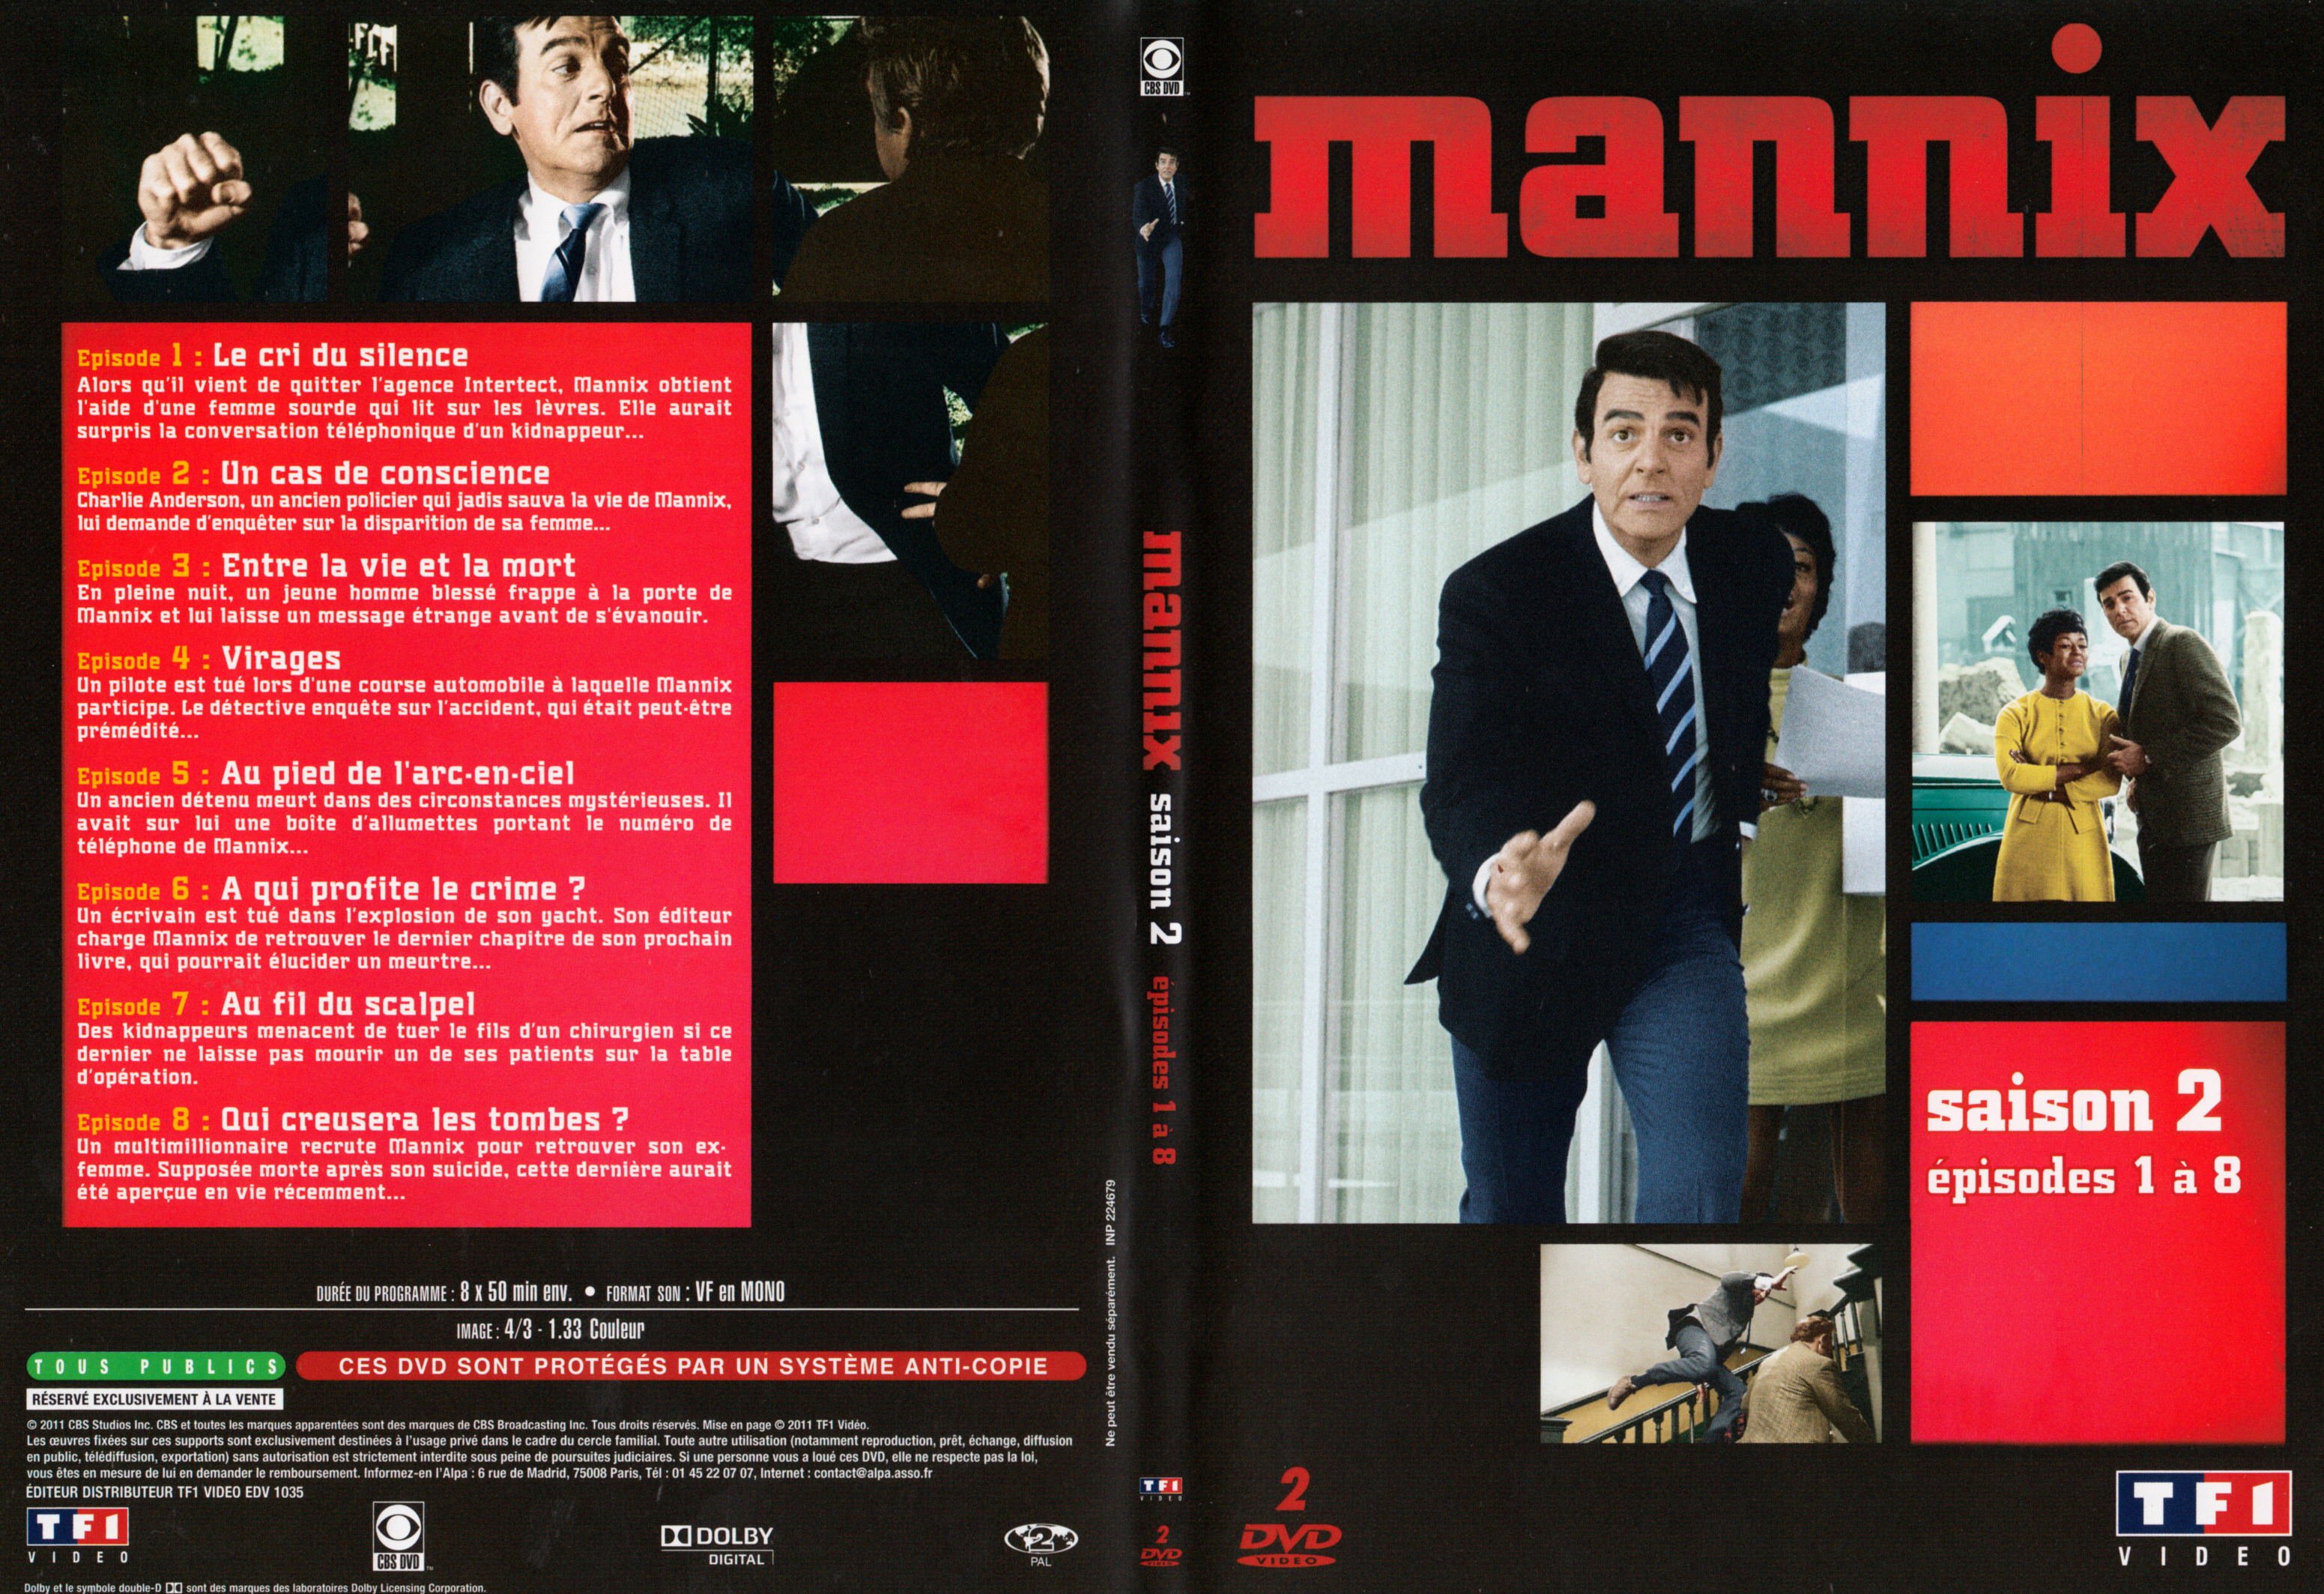 Jaquette DVD Mannix Saison 2 Ep 1-8